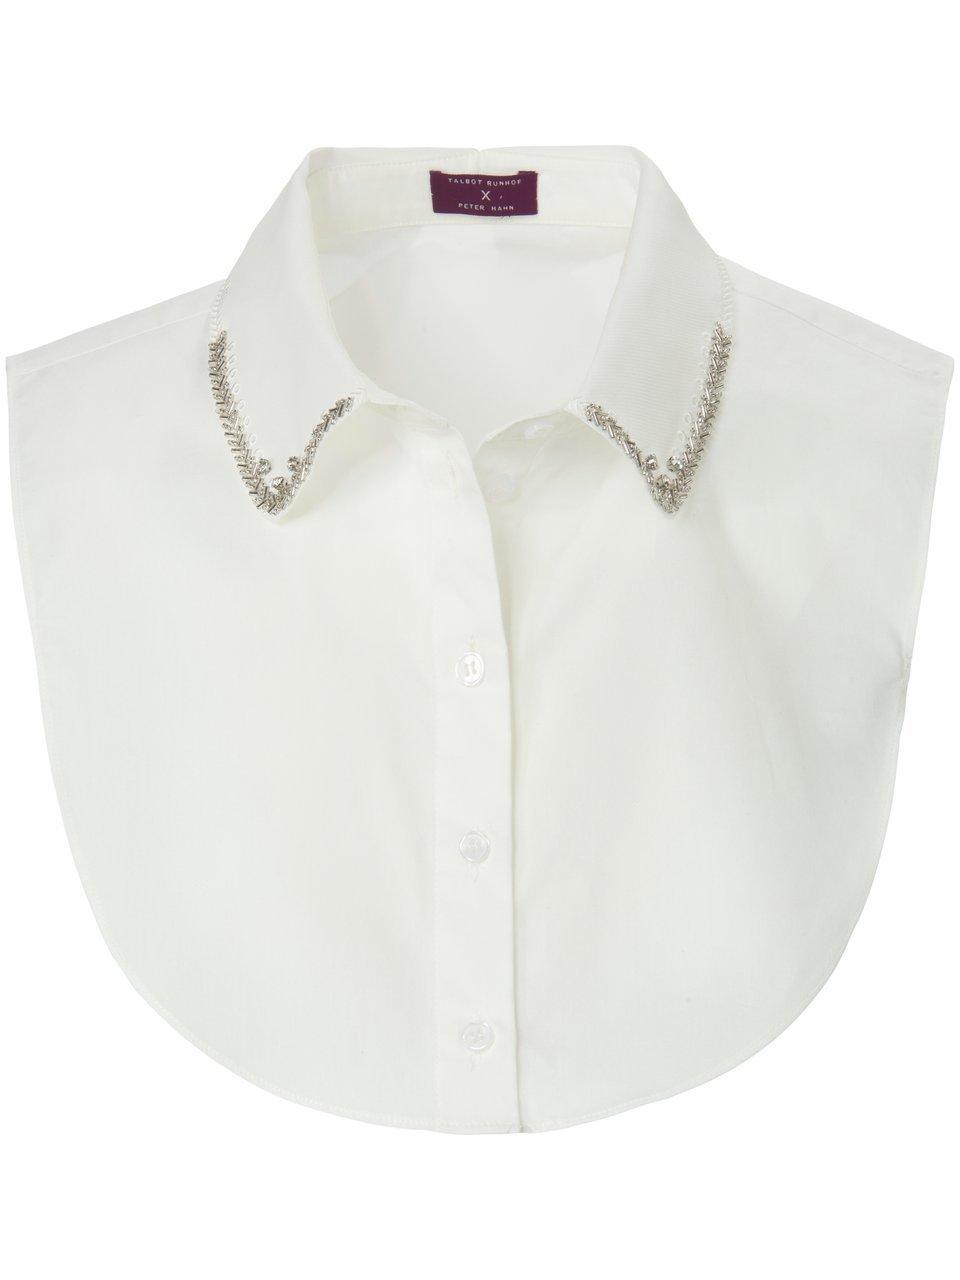 Feestelijke blouses online kopen Peter